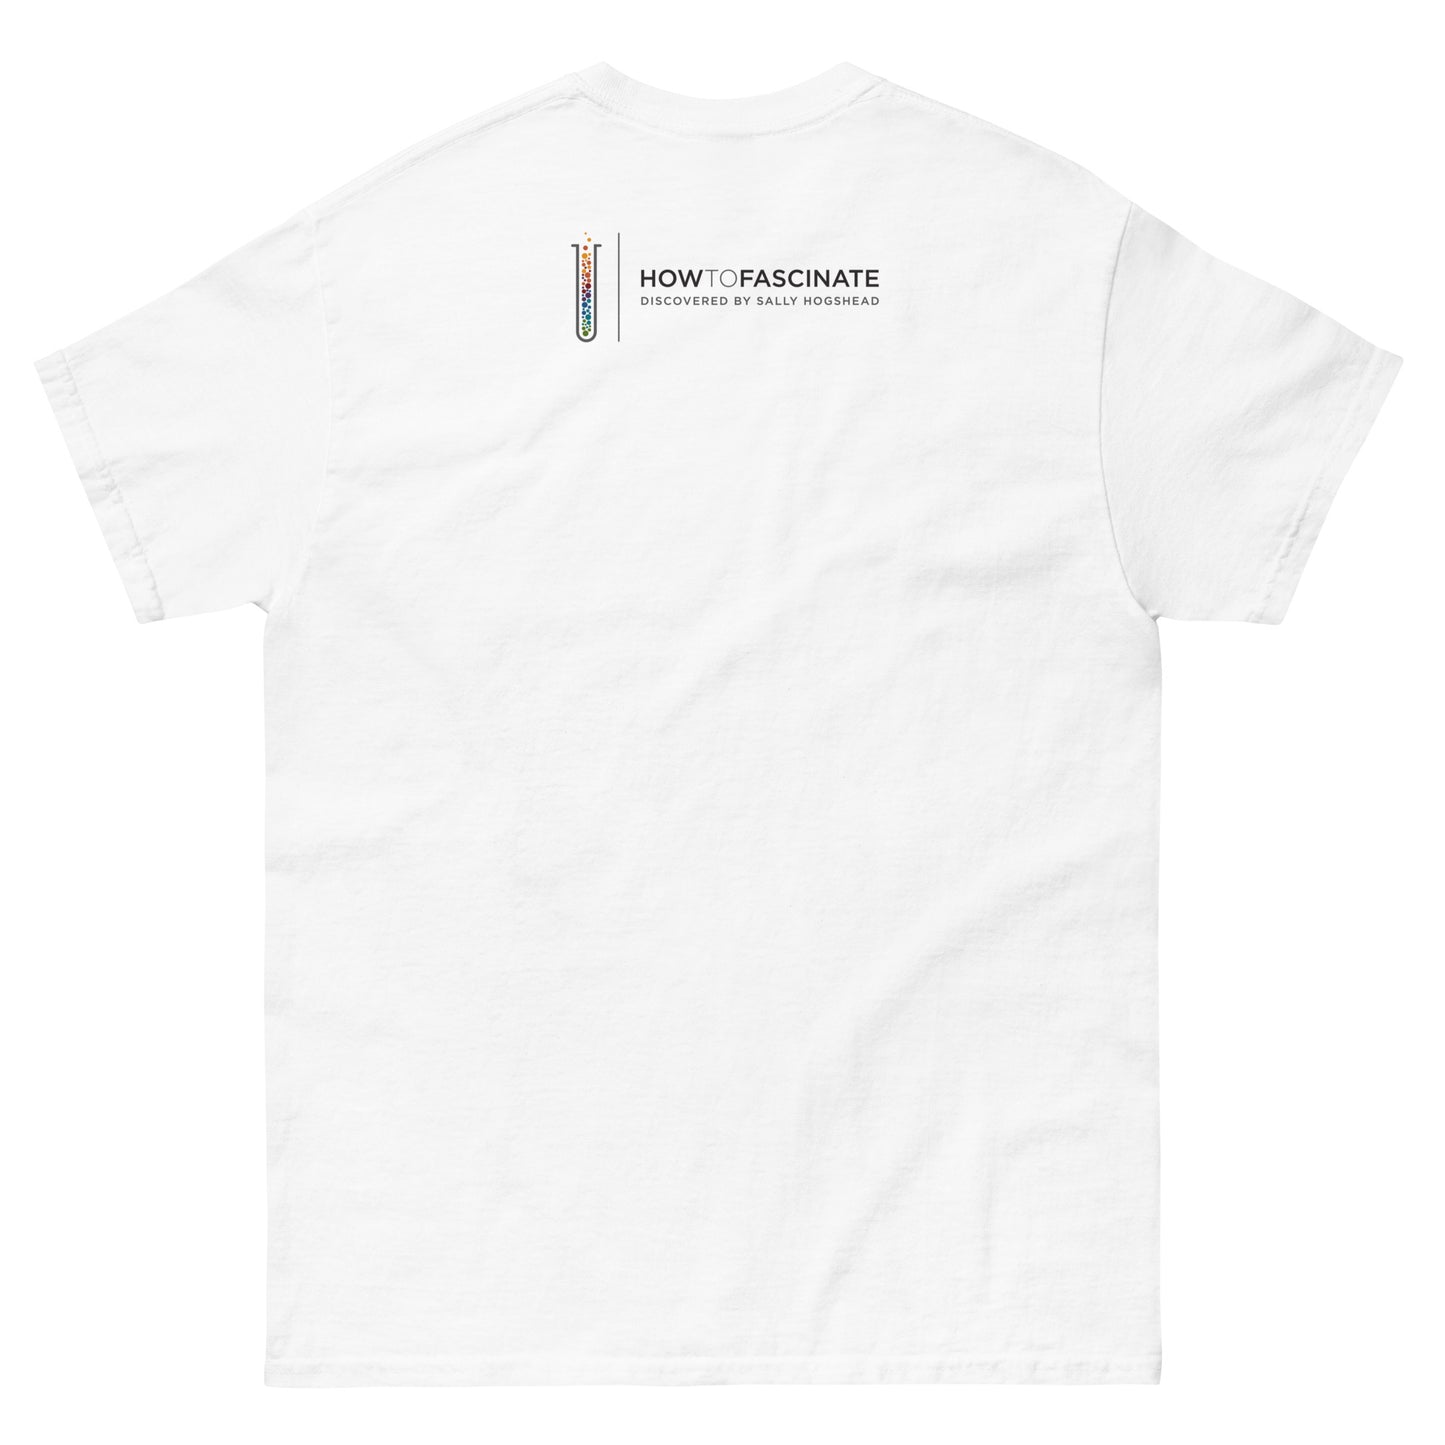 The Connoisseur - Men's Archetype short sleeve t-shirt